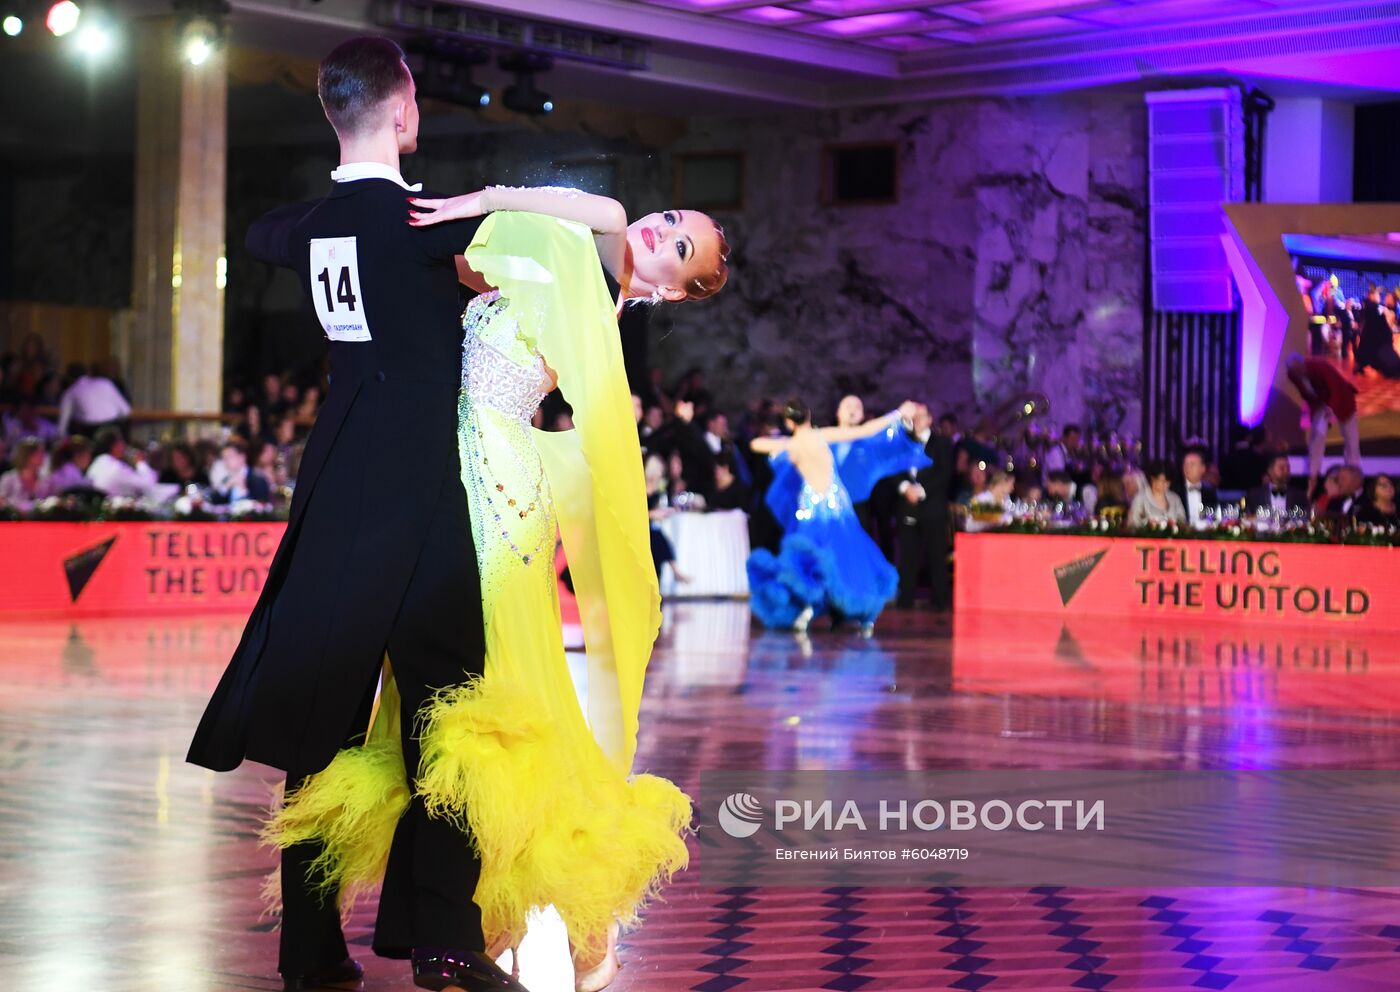 Кубок мира по латиноамериканским танцам в Кремле